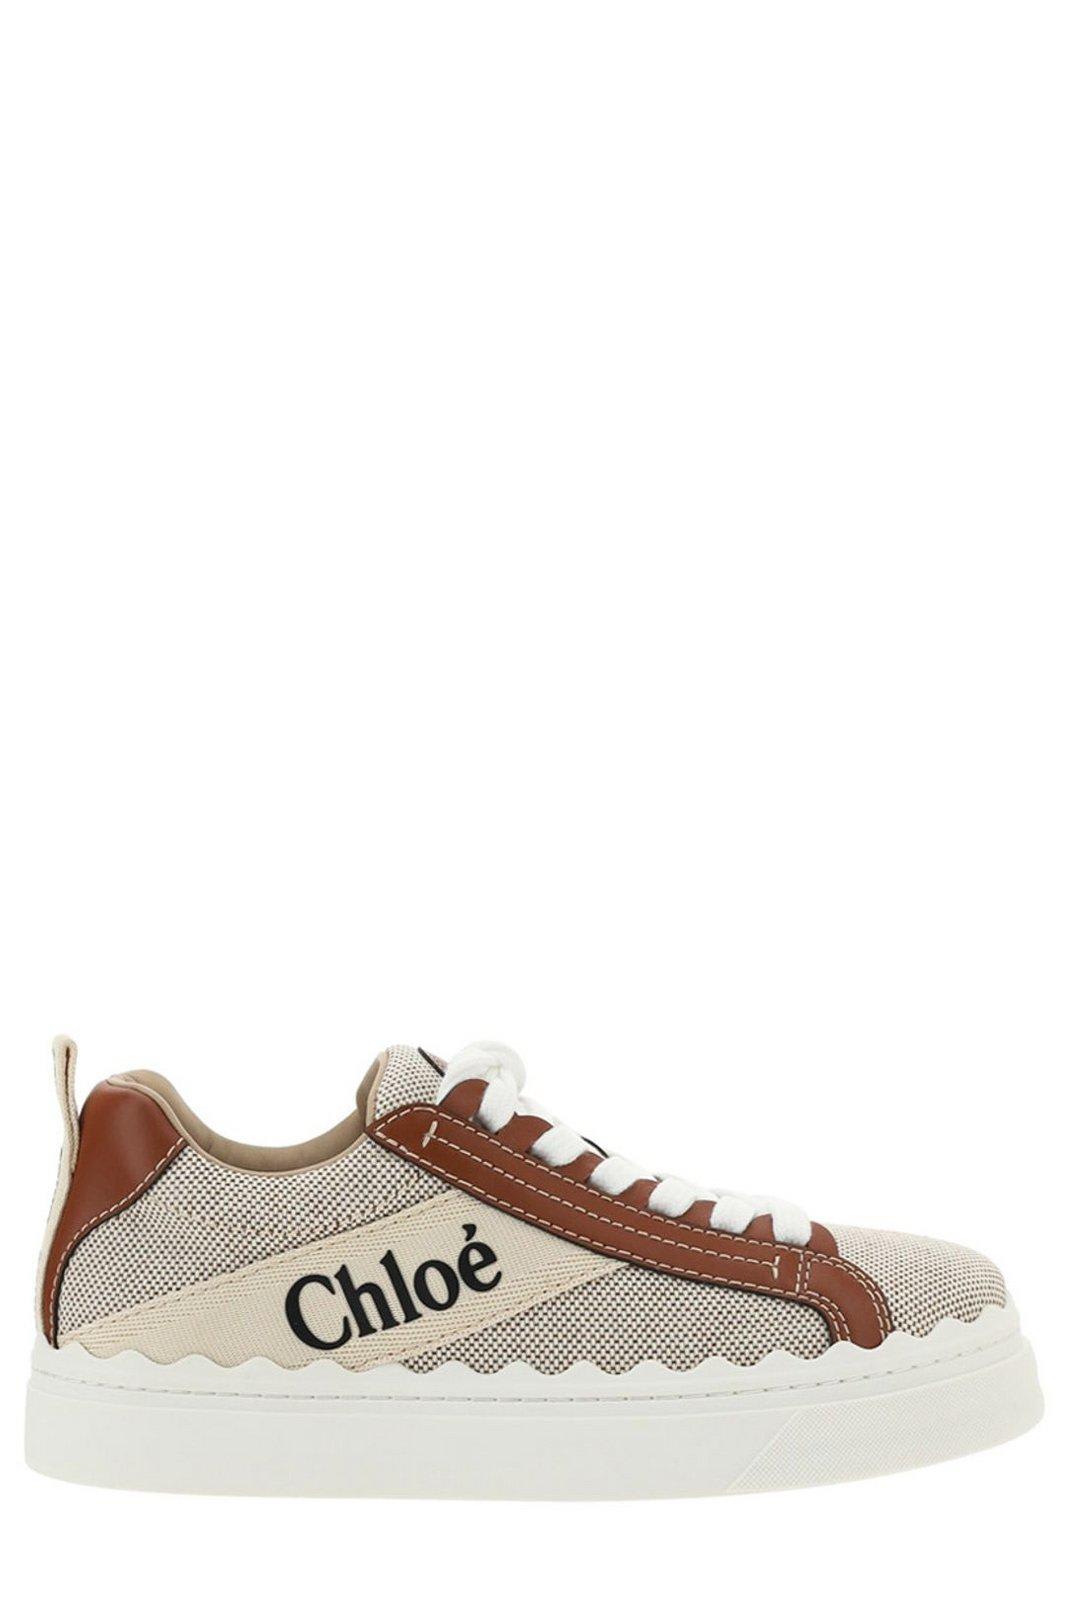 Chloé Lauren Scallop-edge Sneakers